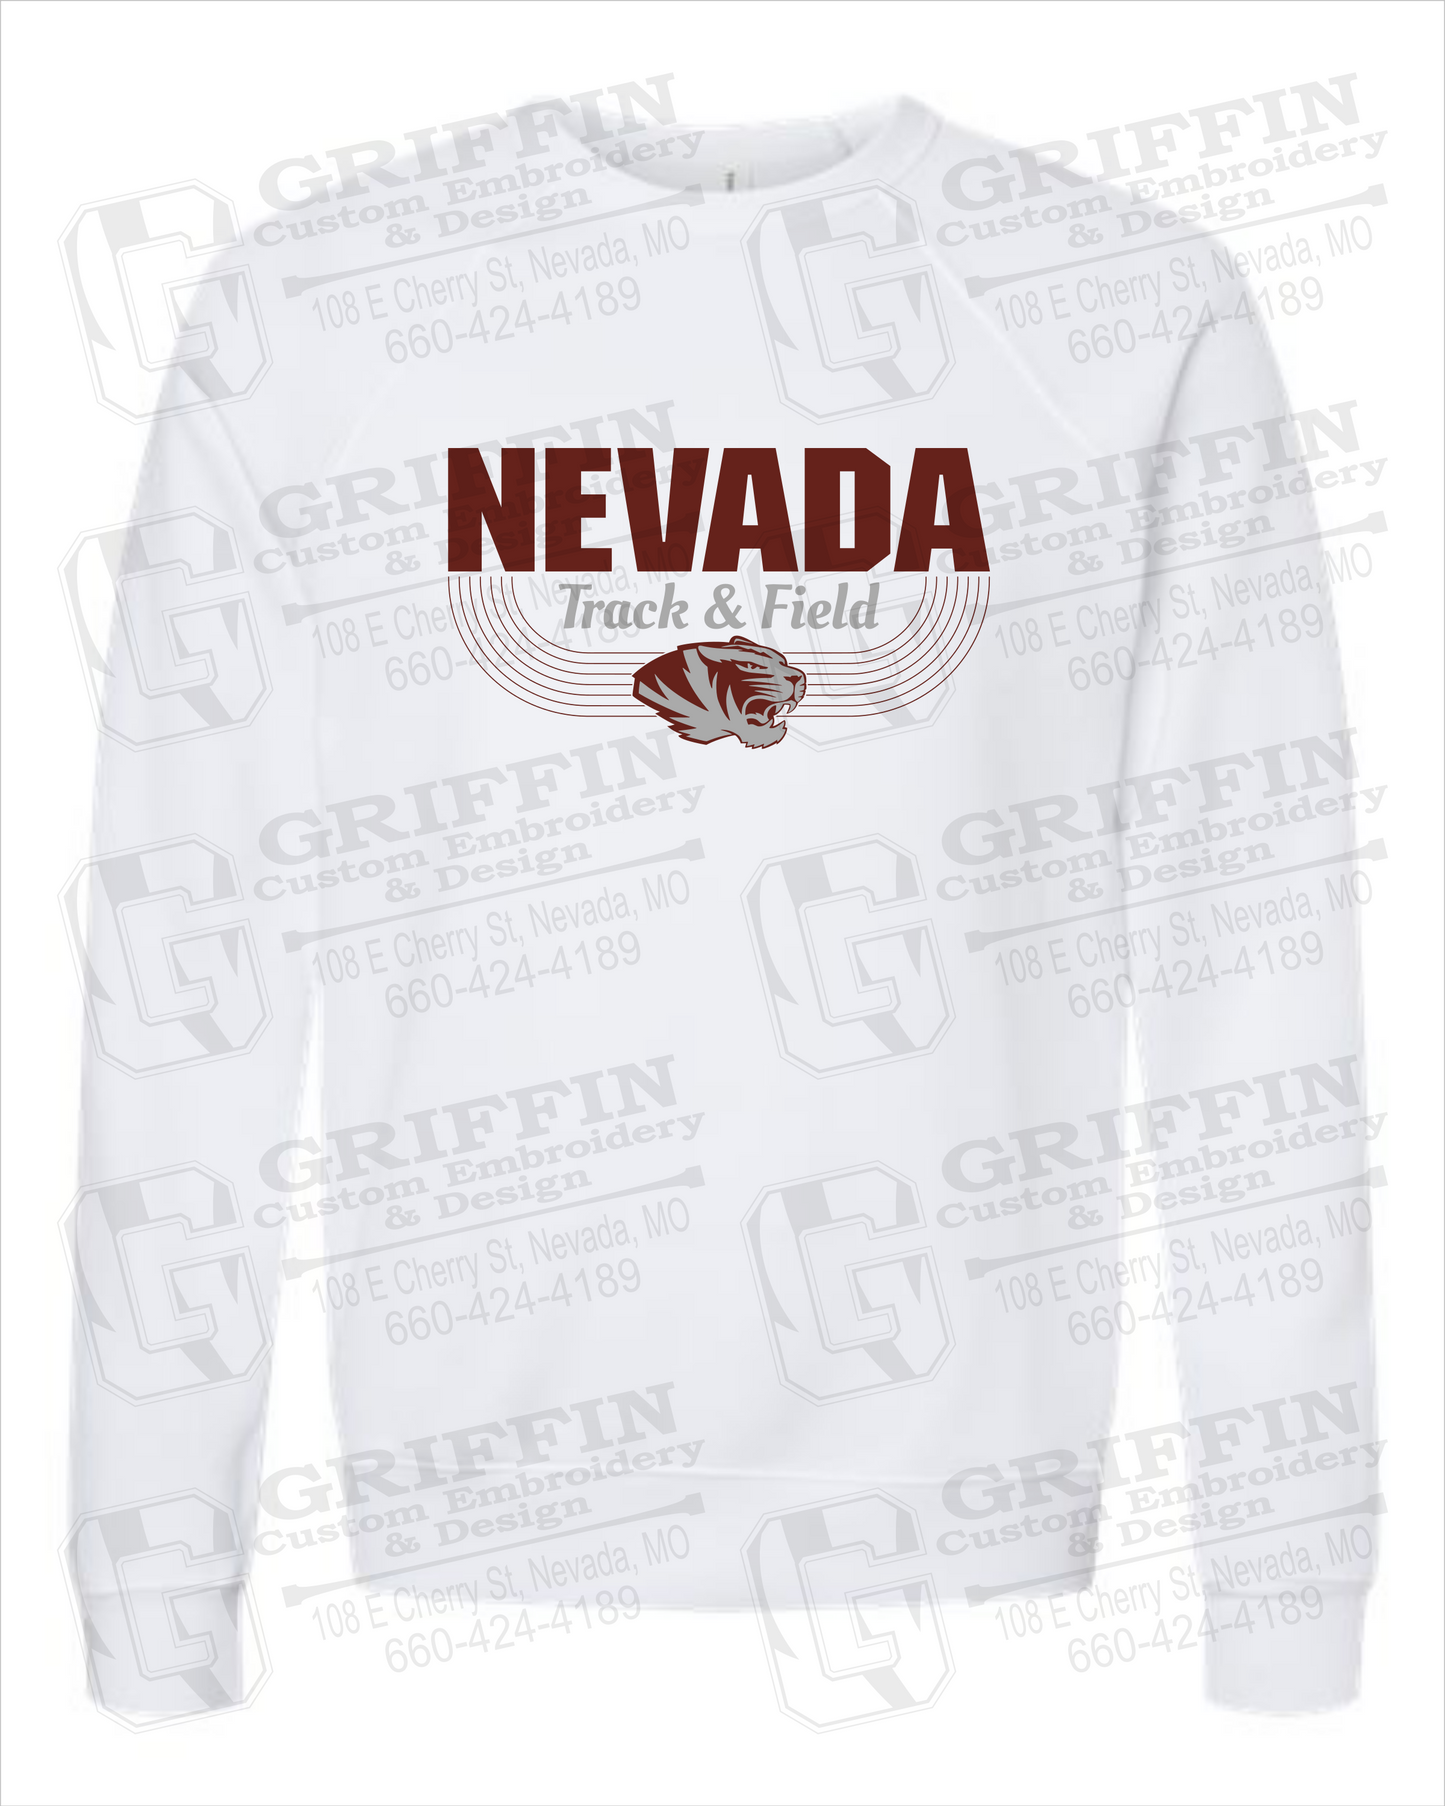 Nevada Tigers 24-R Sponge Fleece Sweatshirt - Track & Field